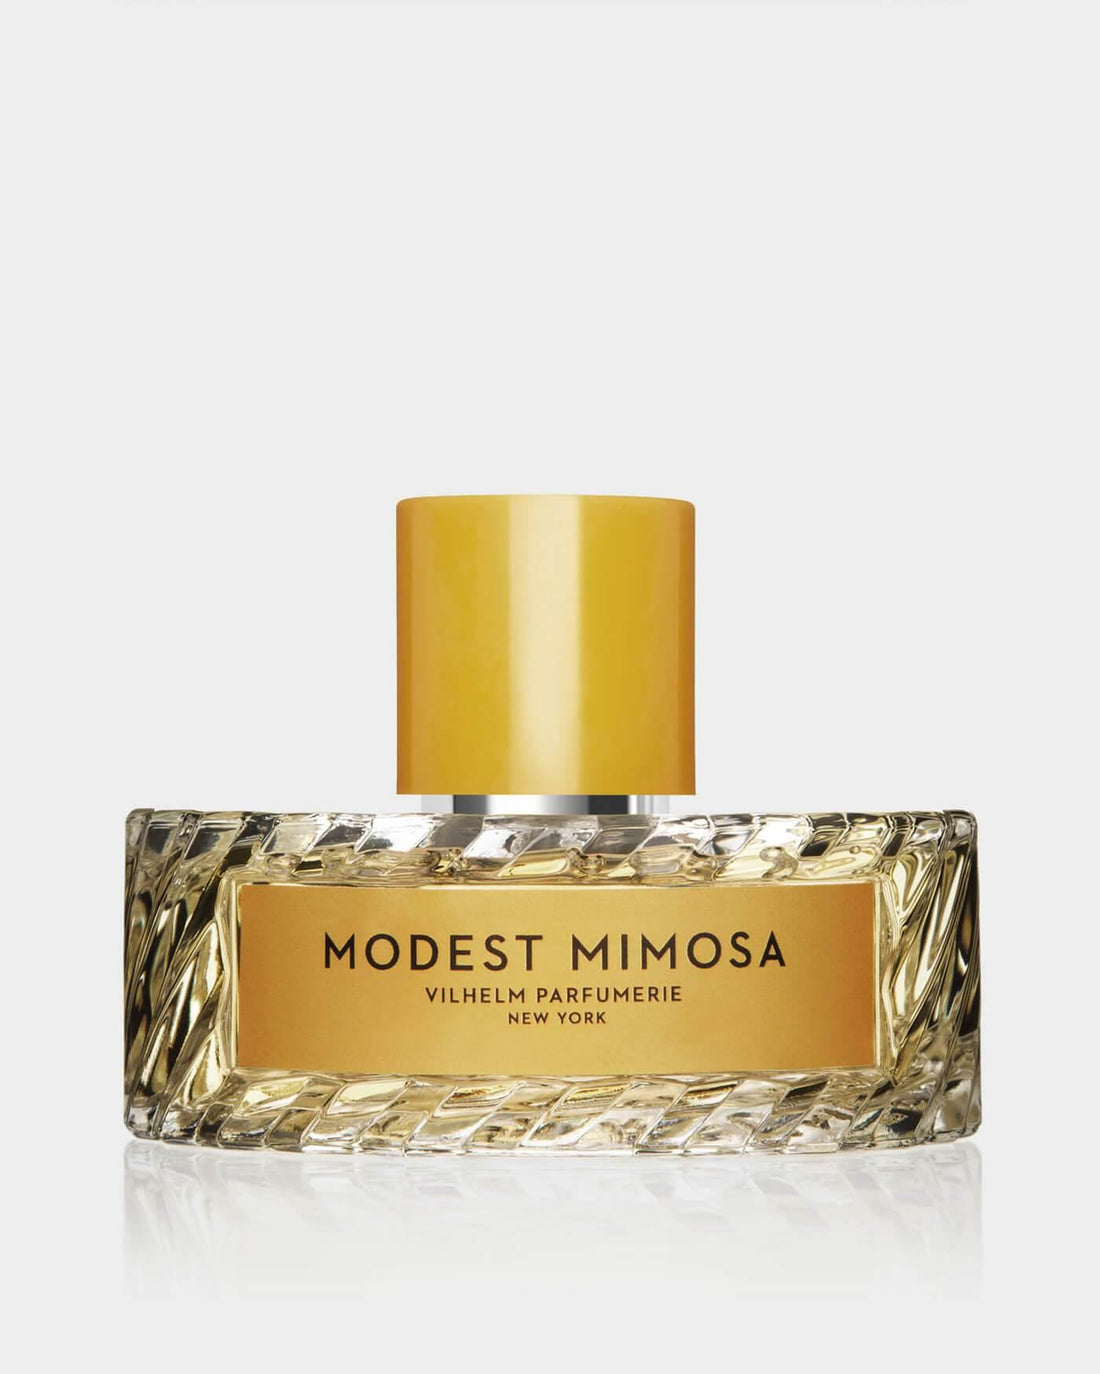 MODEST MIMOSA - Vilhelm Parfumerie